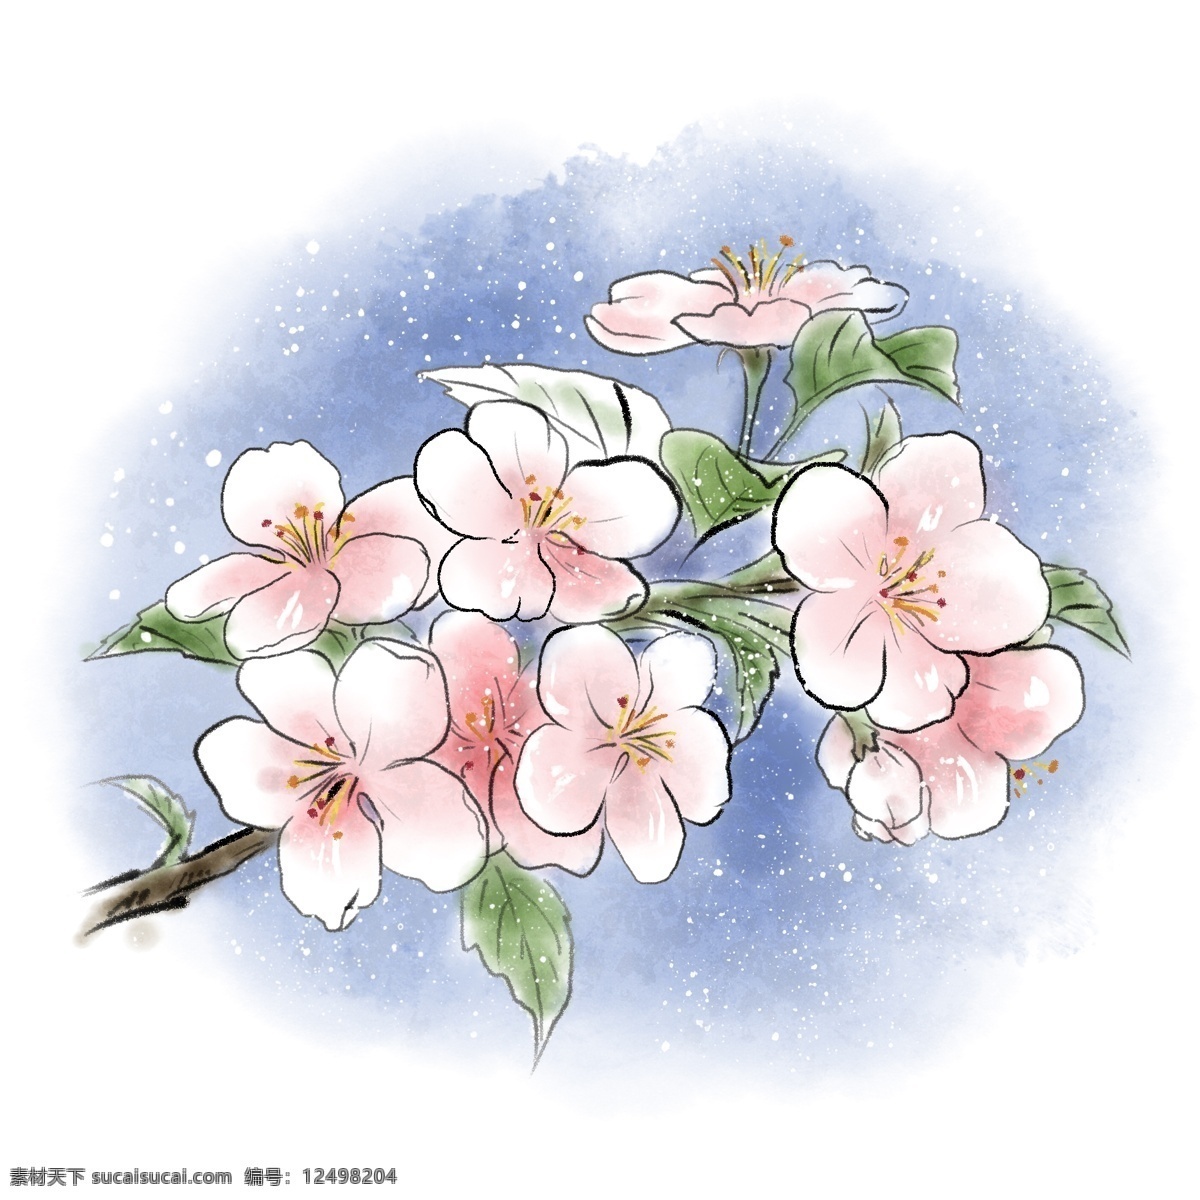 水彩 手绘 樱花 植物 花朵 桃花 春天 清明 谷雨 花瓣 小清新 自然